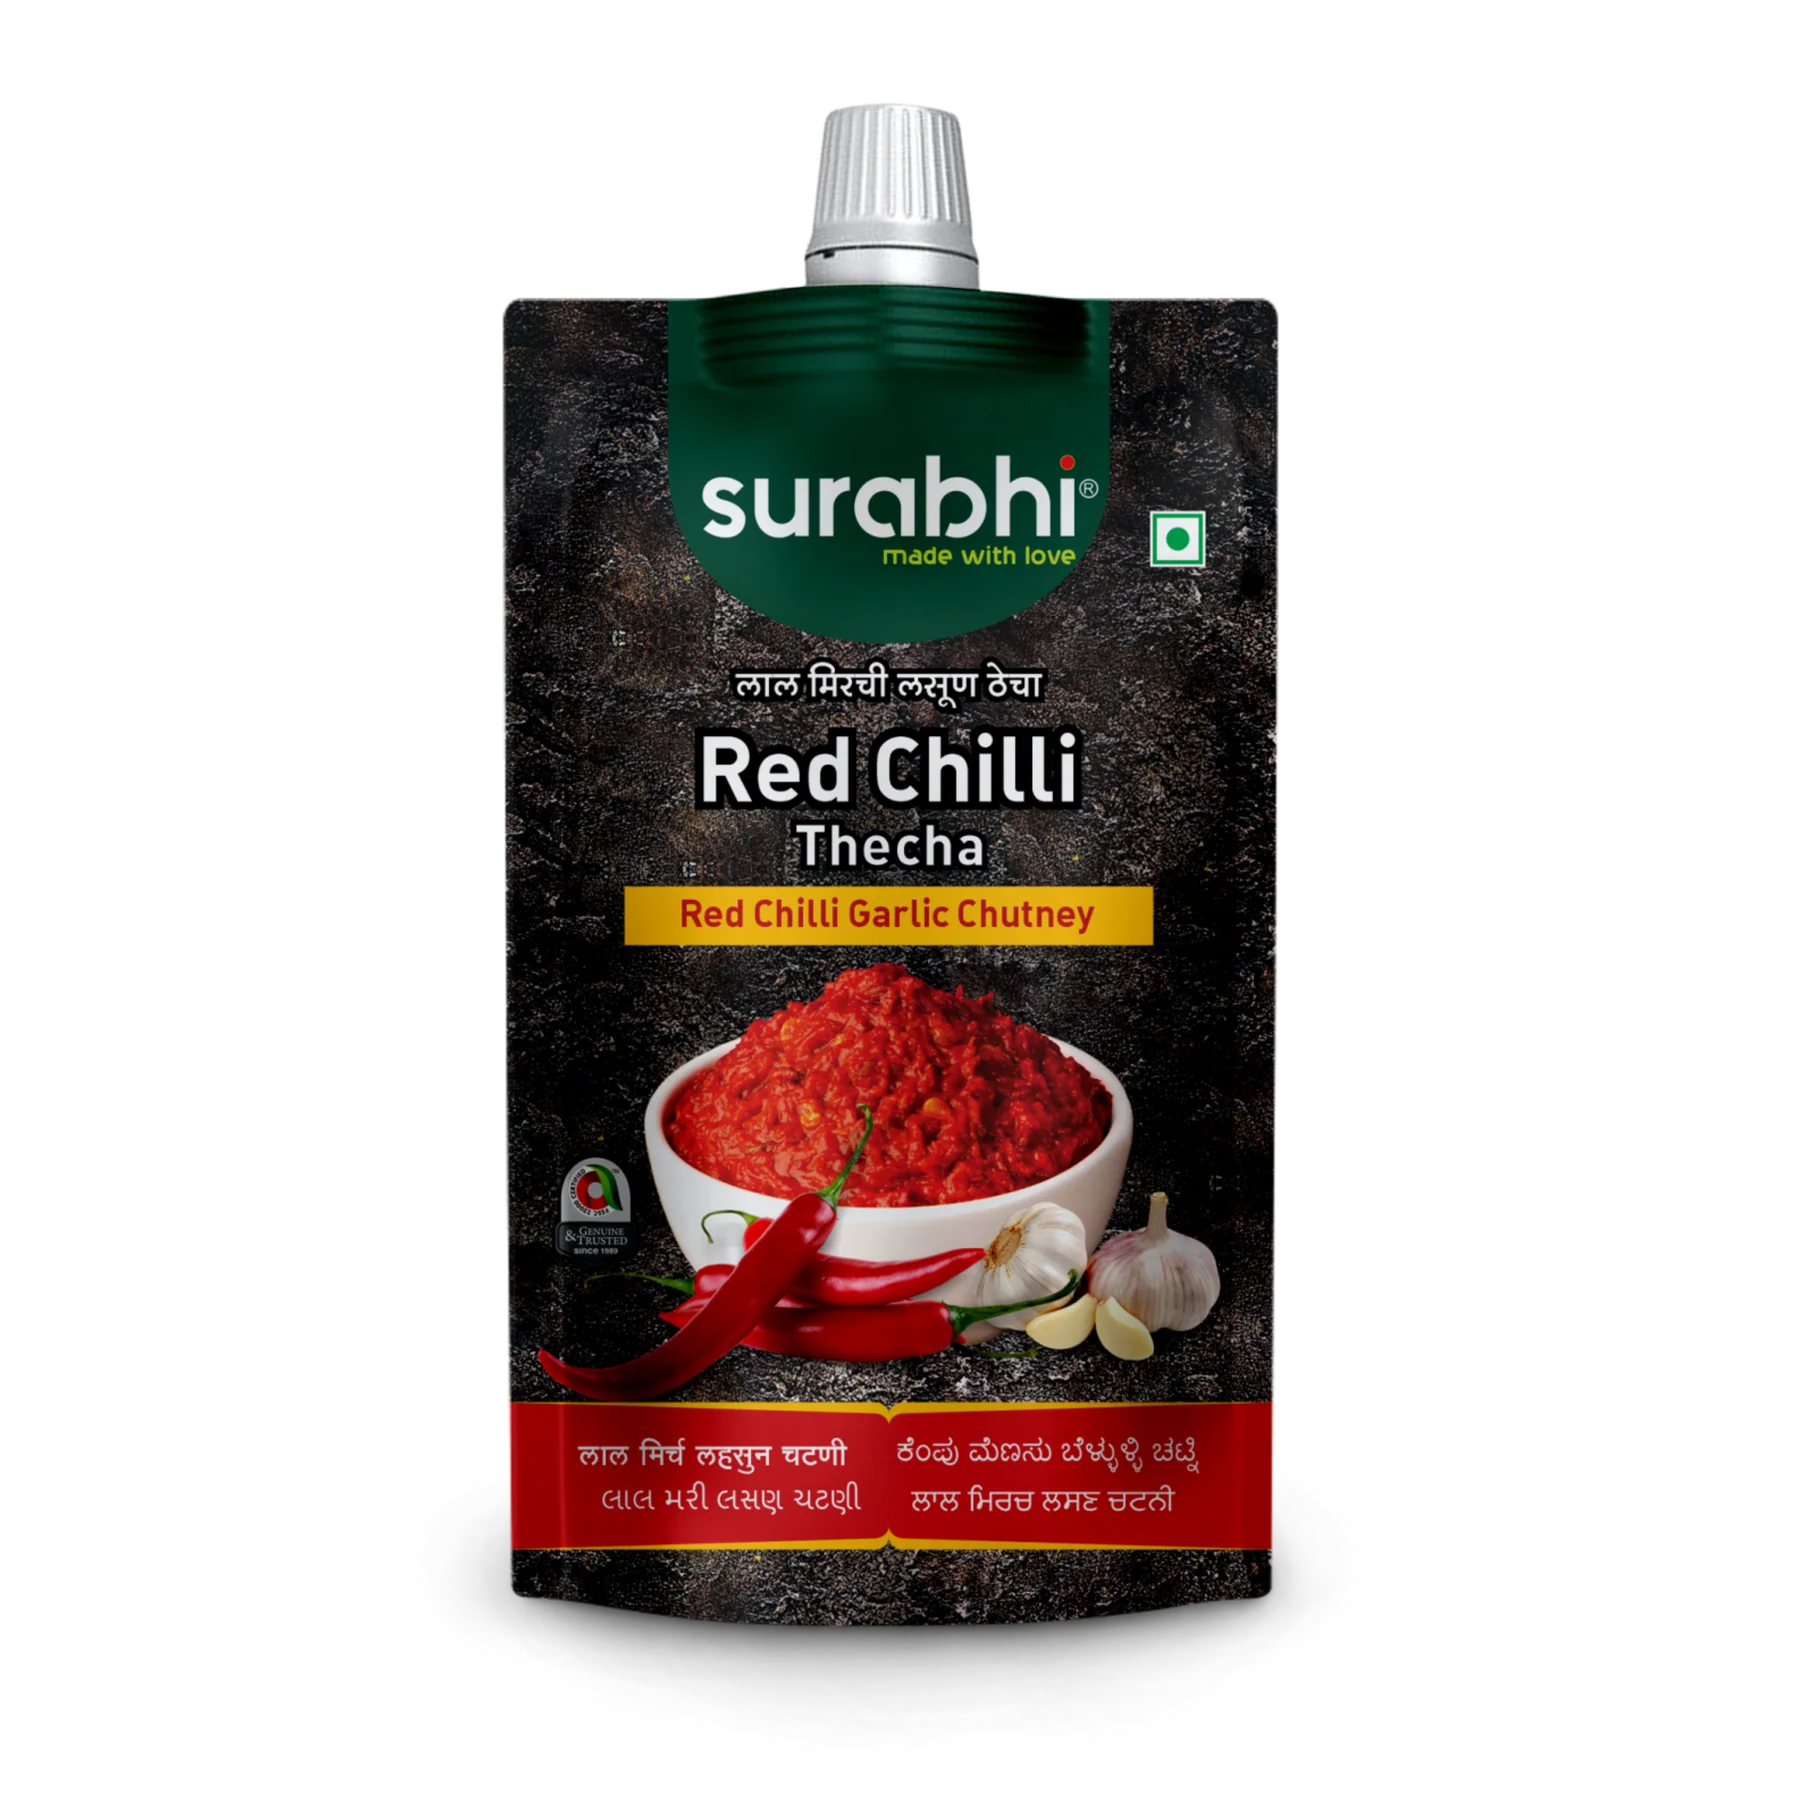 Surabhi Red Chilli Garlic Chutney Thecha 100gm